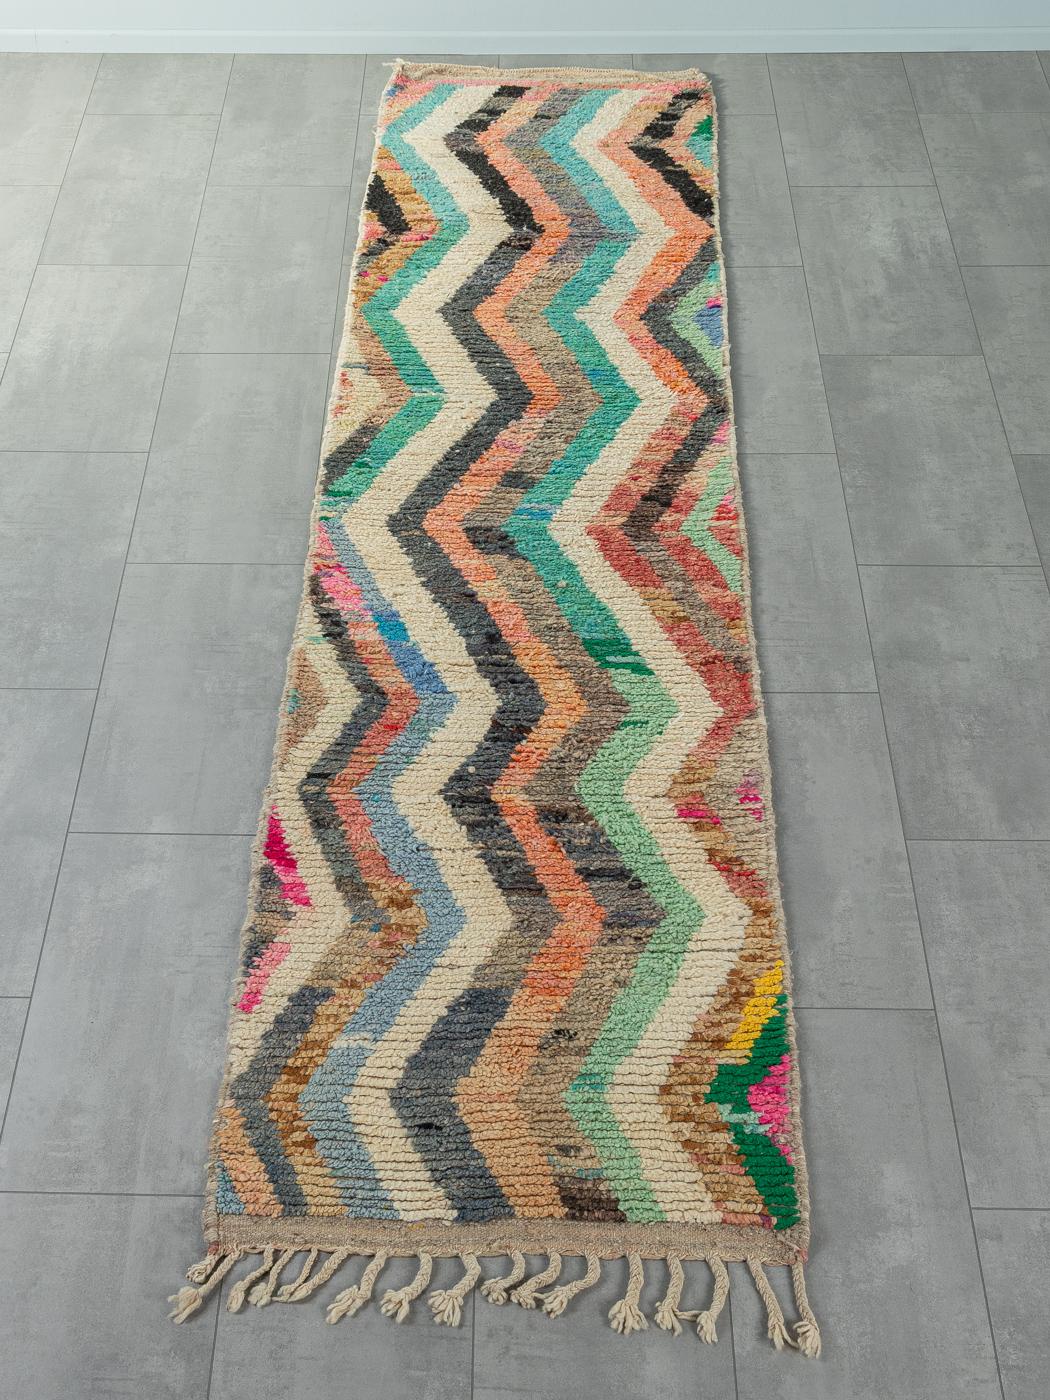 Ce coureur Vintage est un tapis 100% laine - doux et confortable sous le pied. Nos tapis berbères sont fabriqués à la main, un nœud à la fois. Chacun de nos tapis berbères est une pièce unique et durable, créée de manière durable avec de la laine